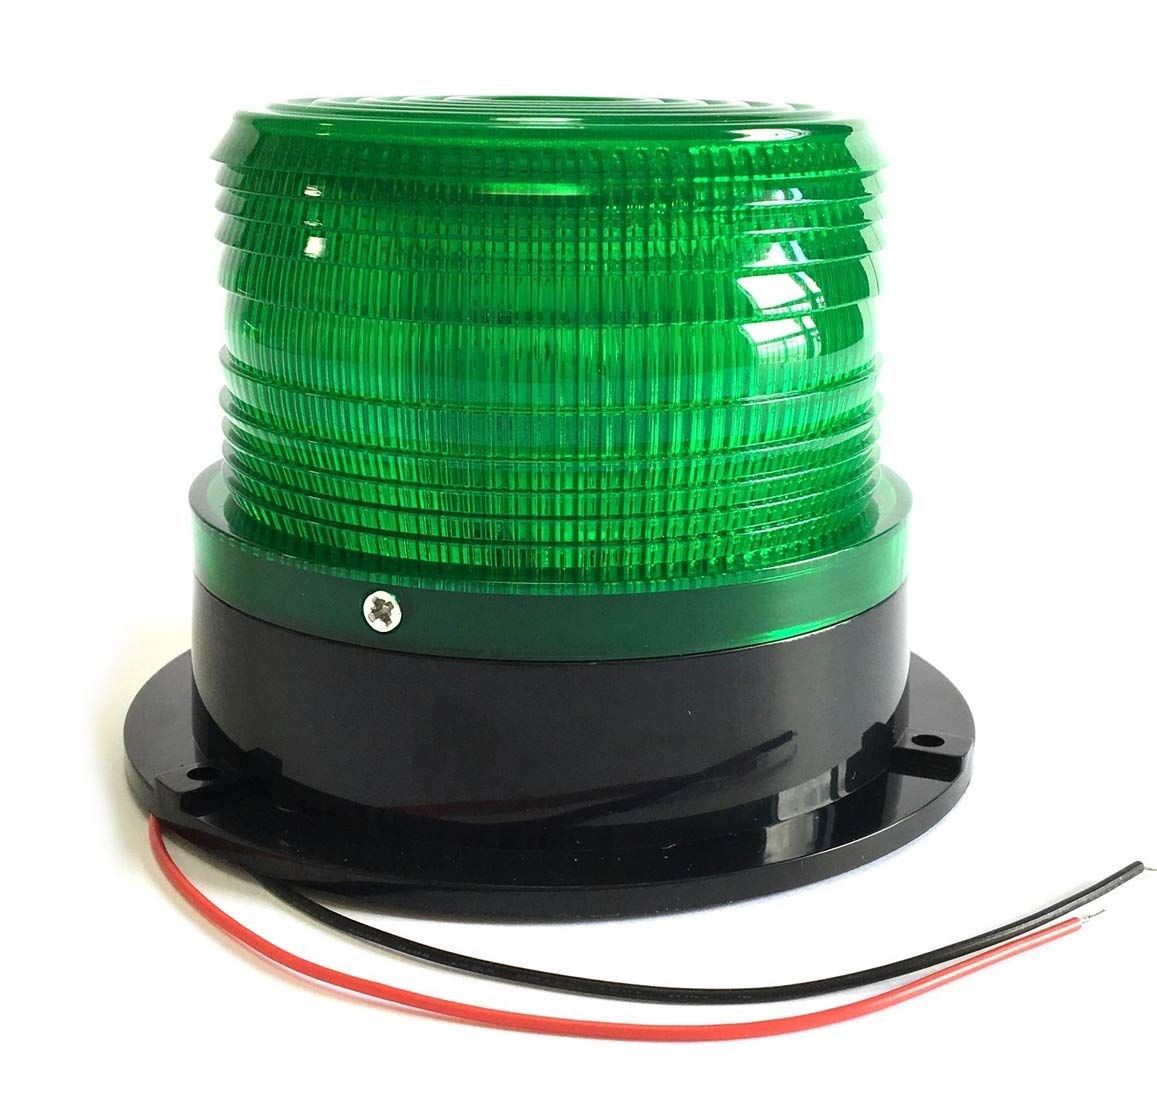 TradeWind] 警告灯 LED フラッシュライト ストロボ ライト パトランプ 非常信号灯 緊急灯 点滅可 車 バイク トラック 船舶  12/24V兼用（緑） [緑グリーン] [94mm] - メルカリ